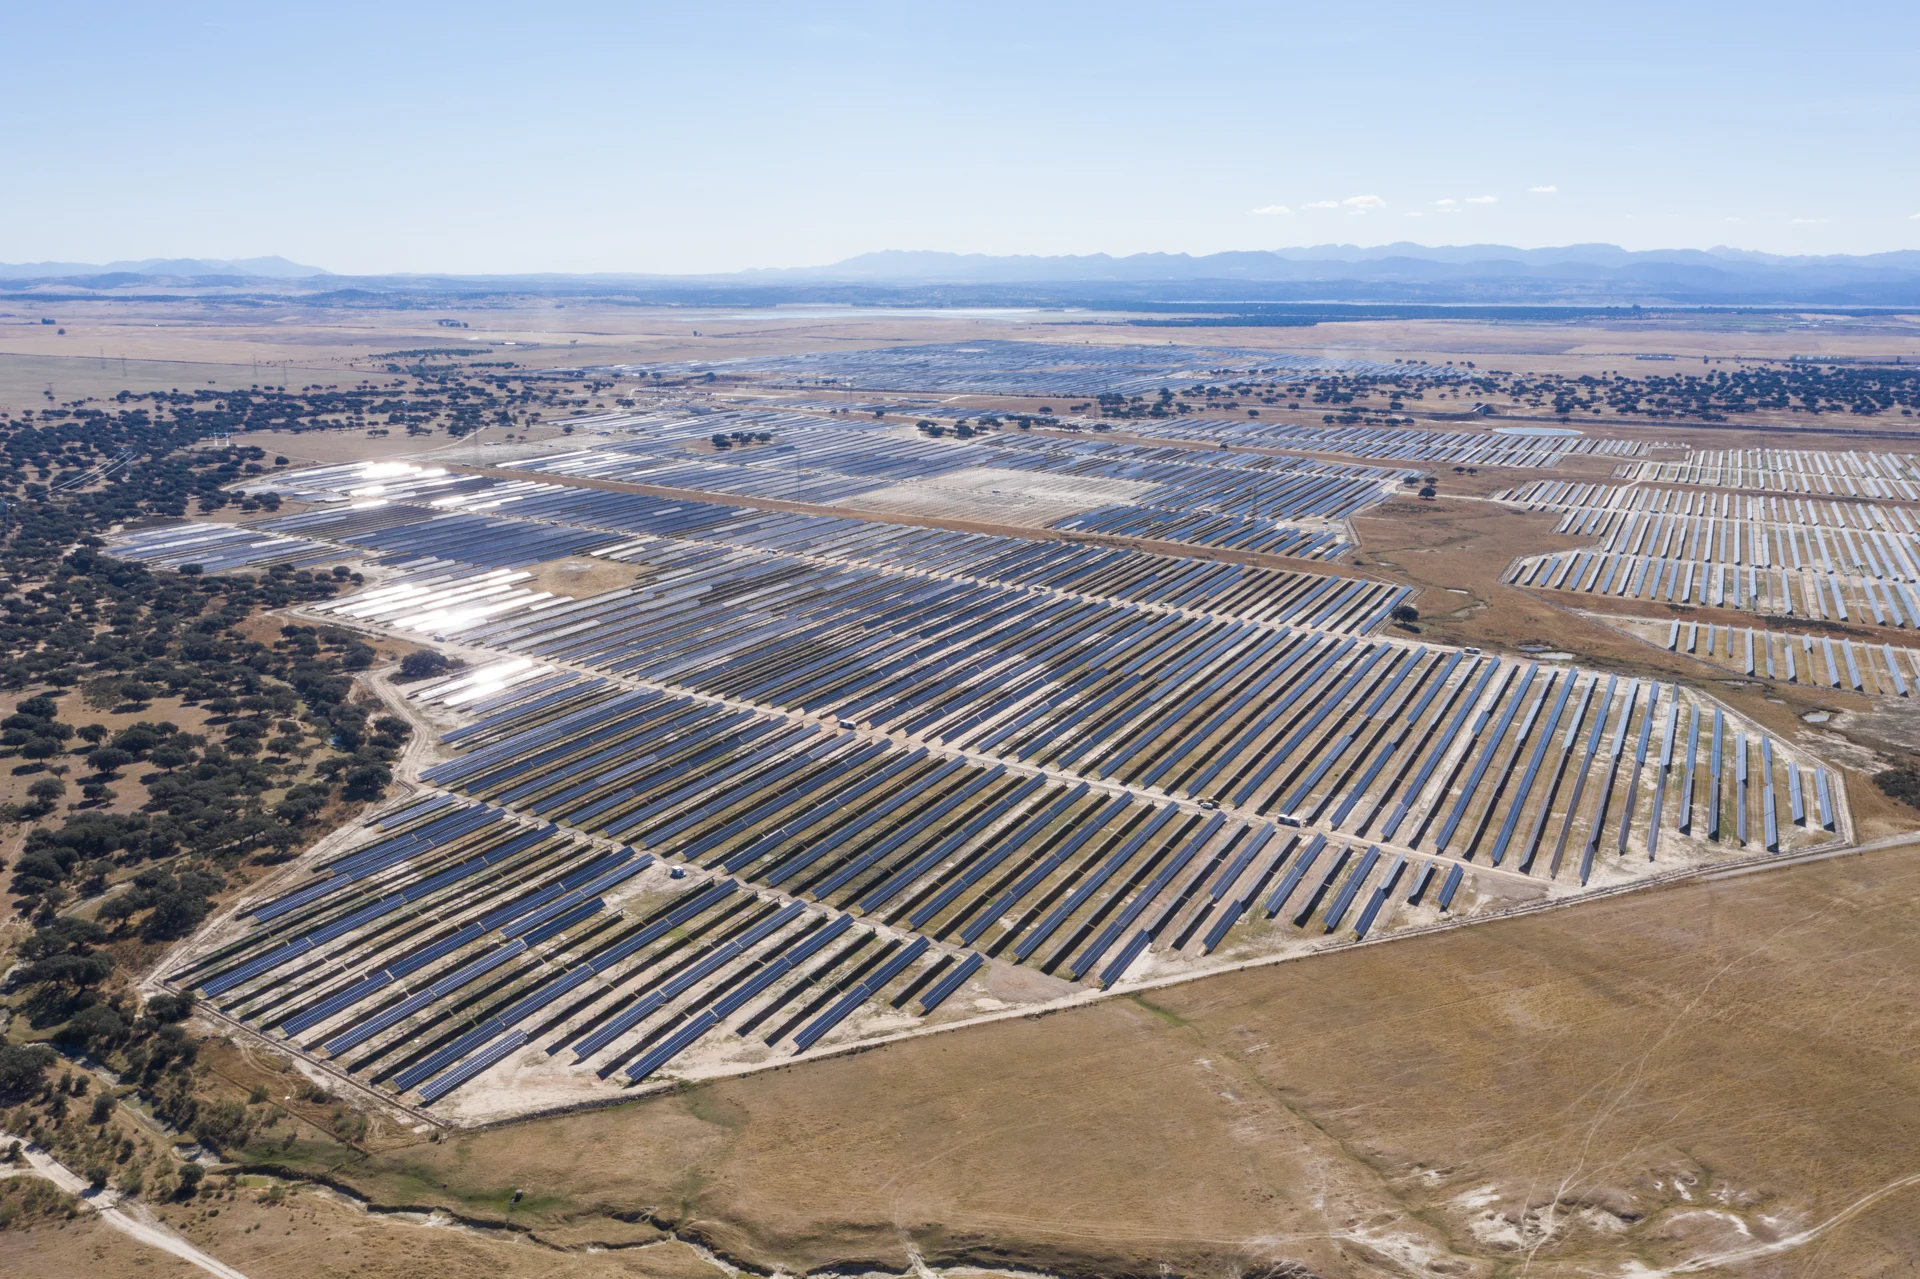 Planta solar de Solarcentury ubicada en Extremadura, España. Uno de los parques solares más grandes del país (300 MWp).